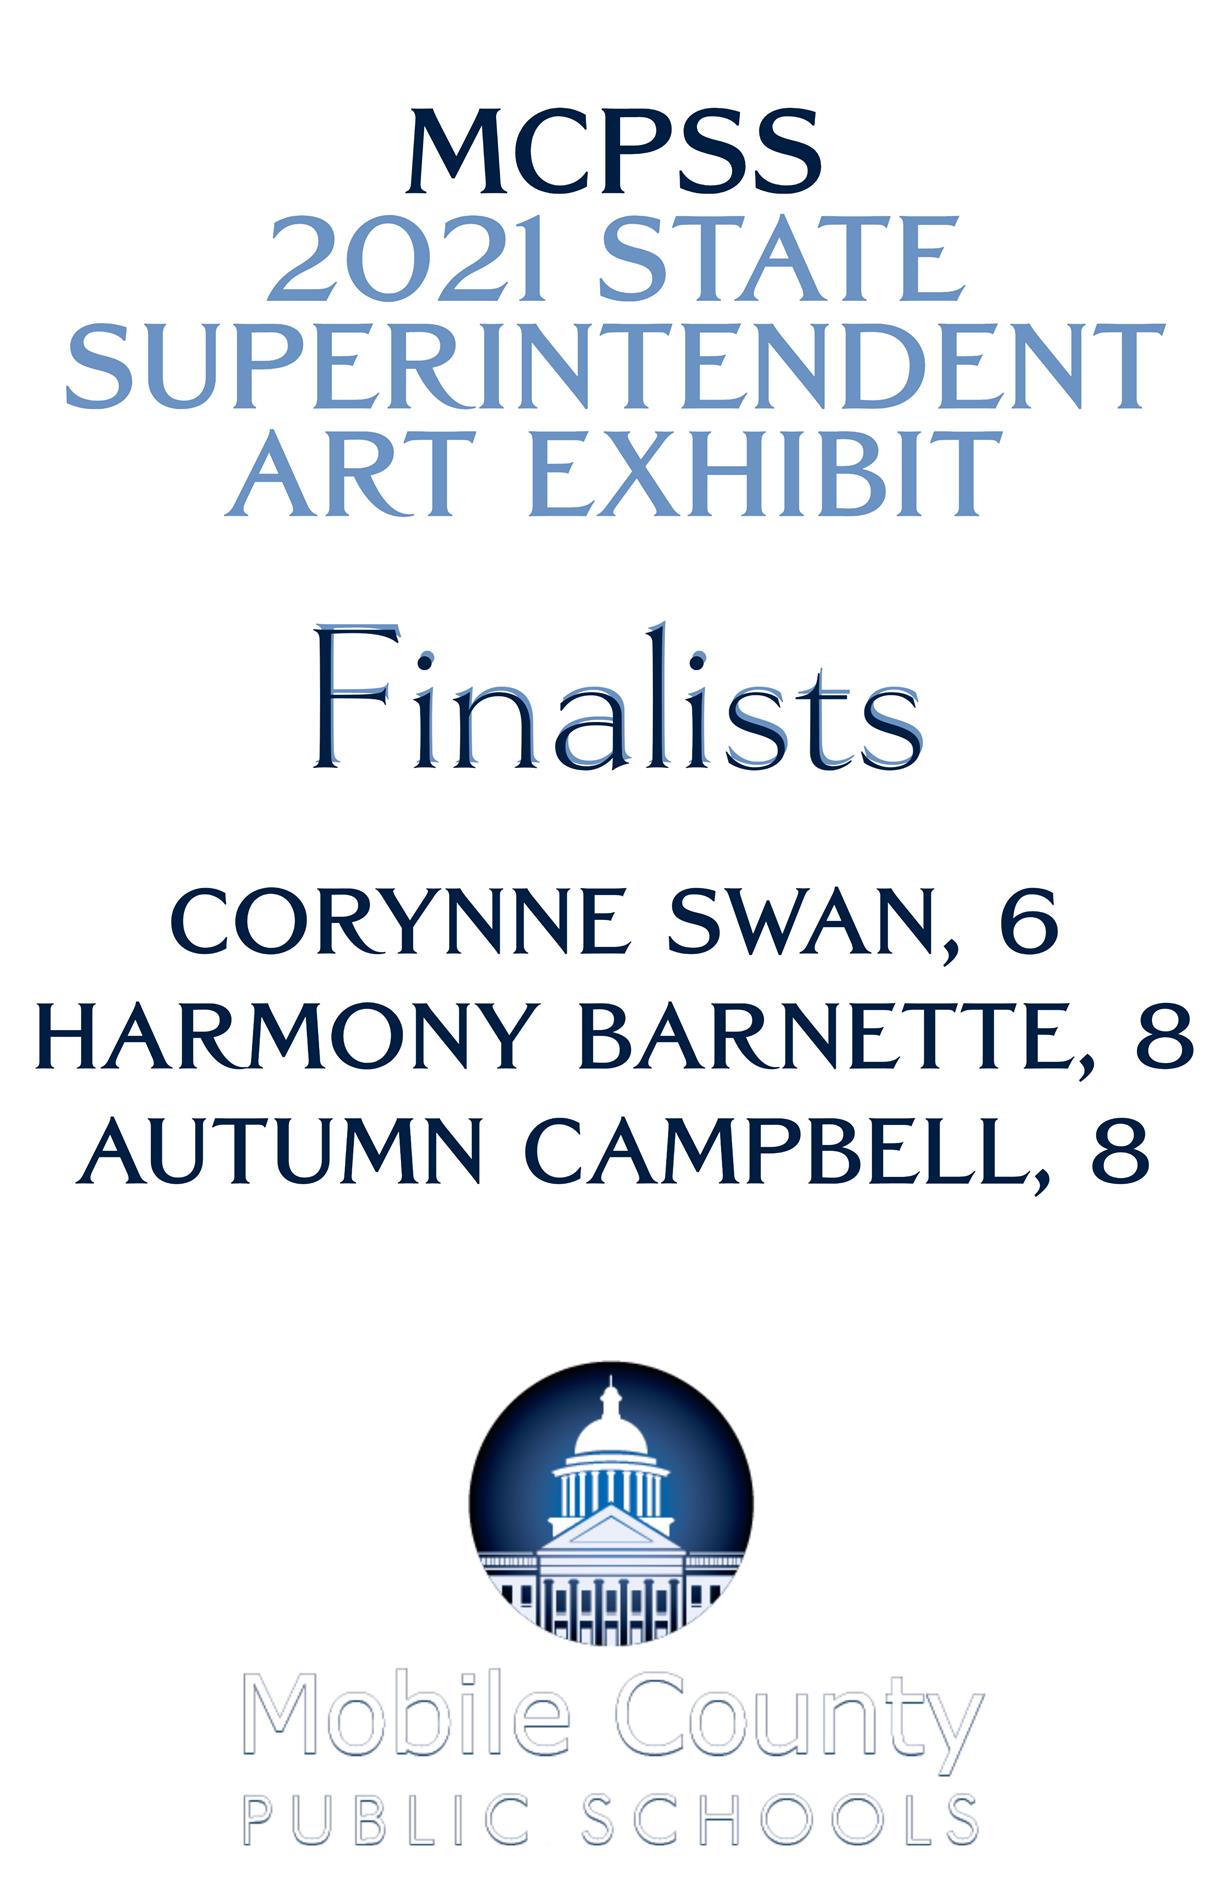 State Superintendent Art Exhibit Finalist